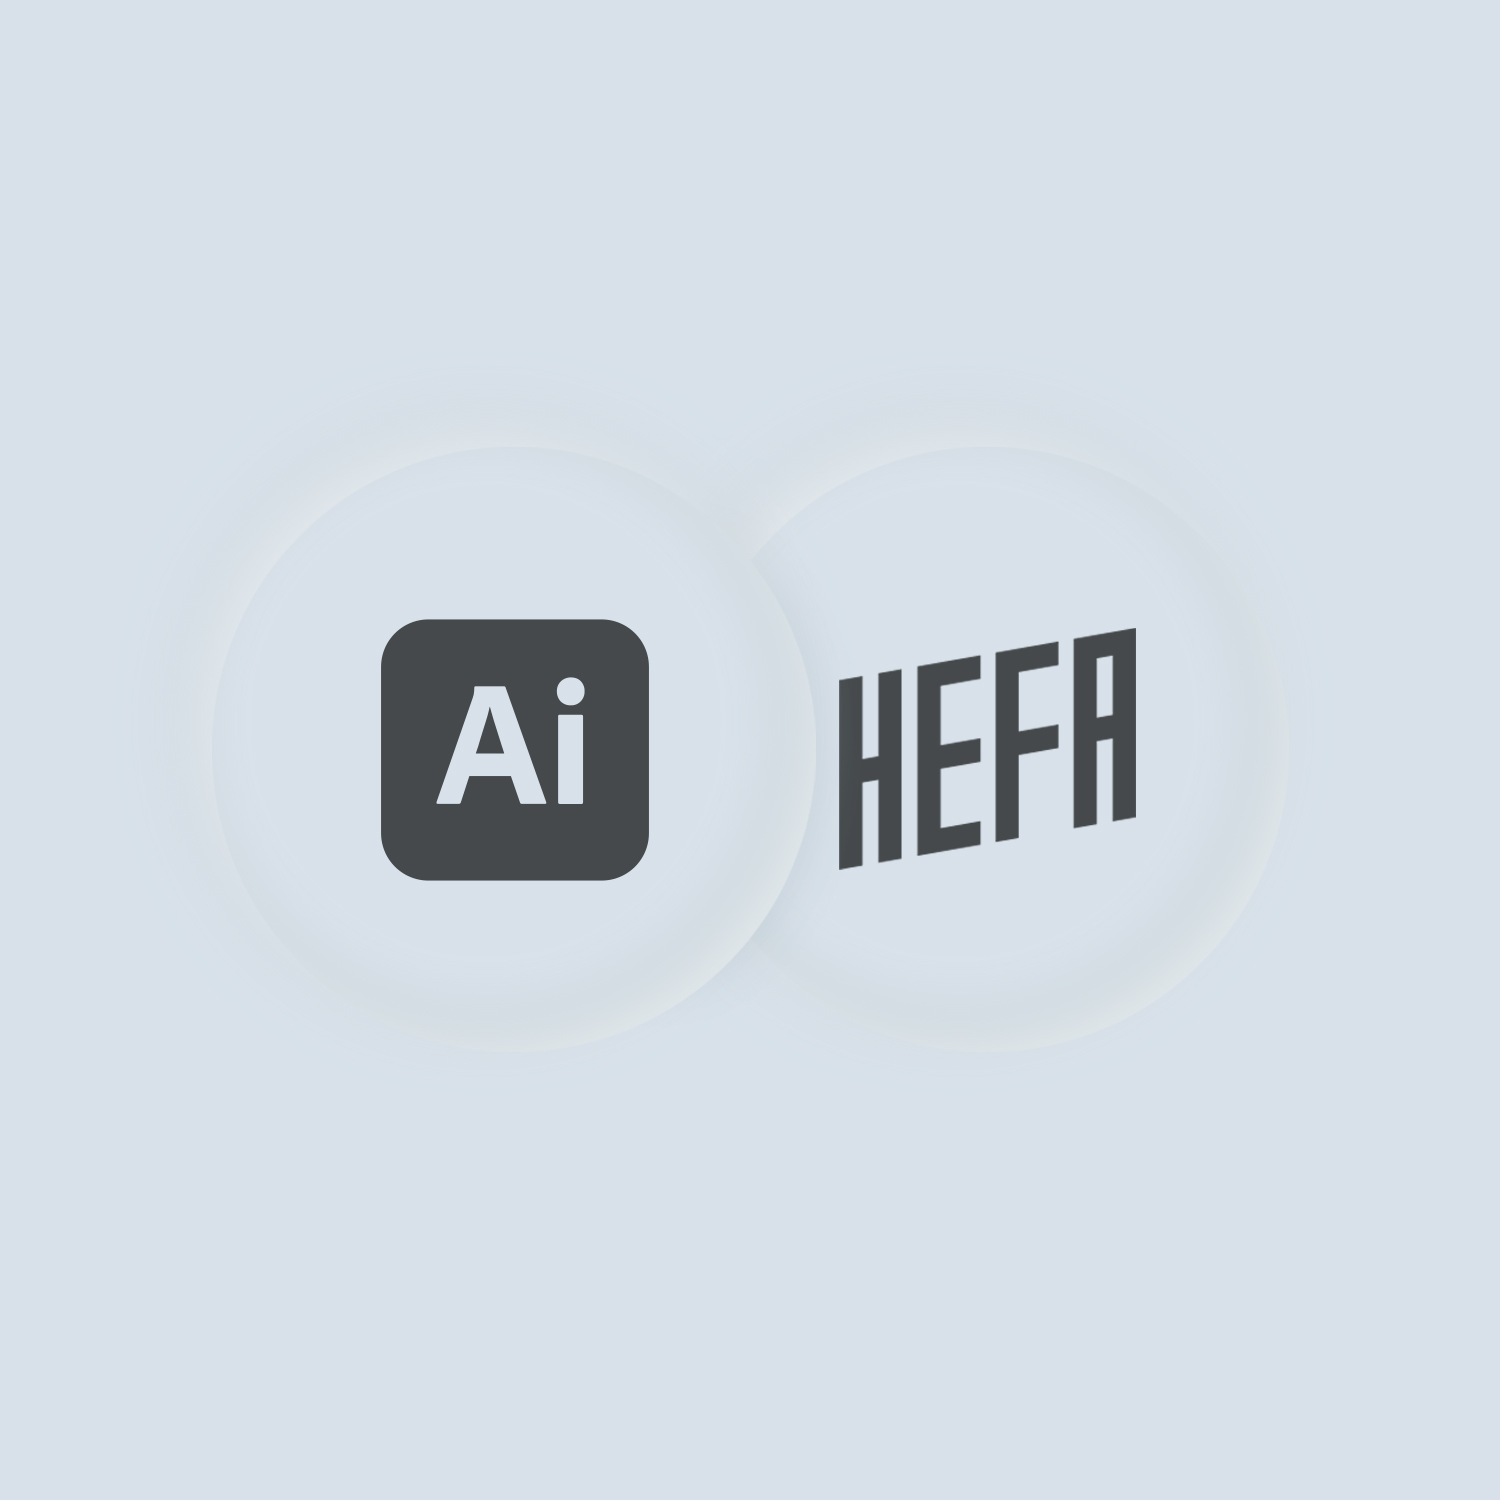 Hefa bruger Adobe illustrator